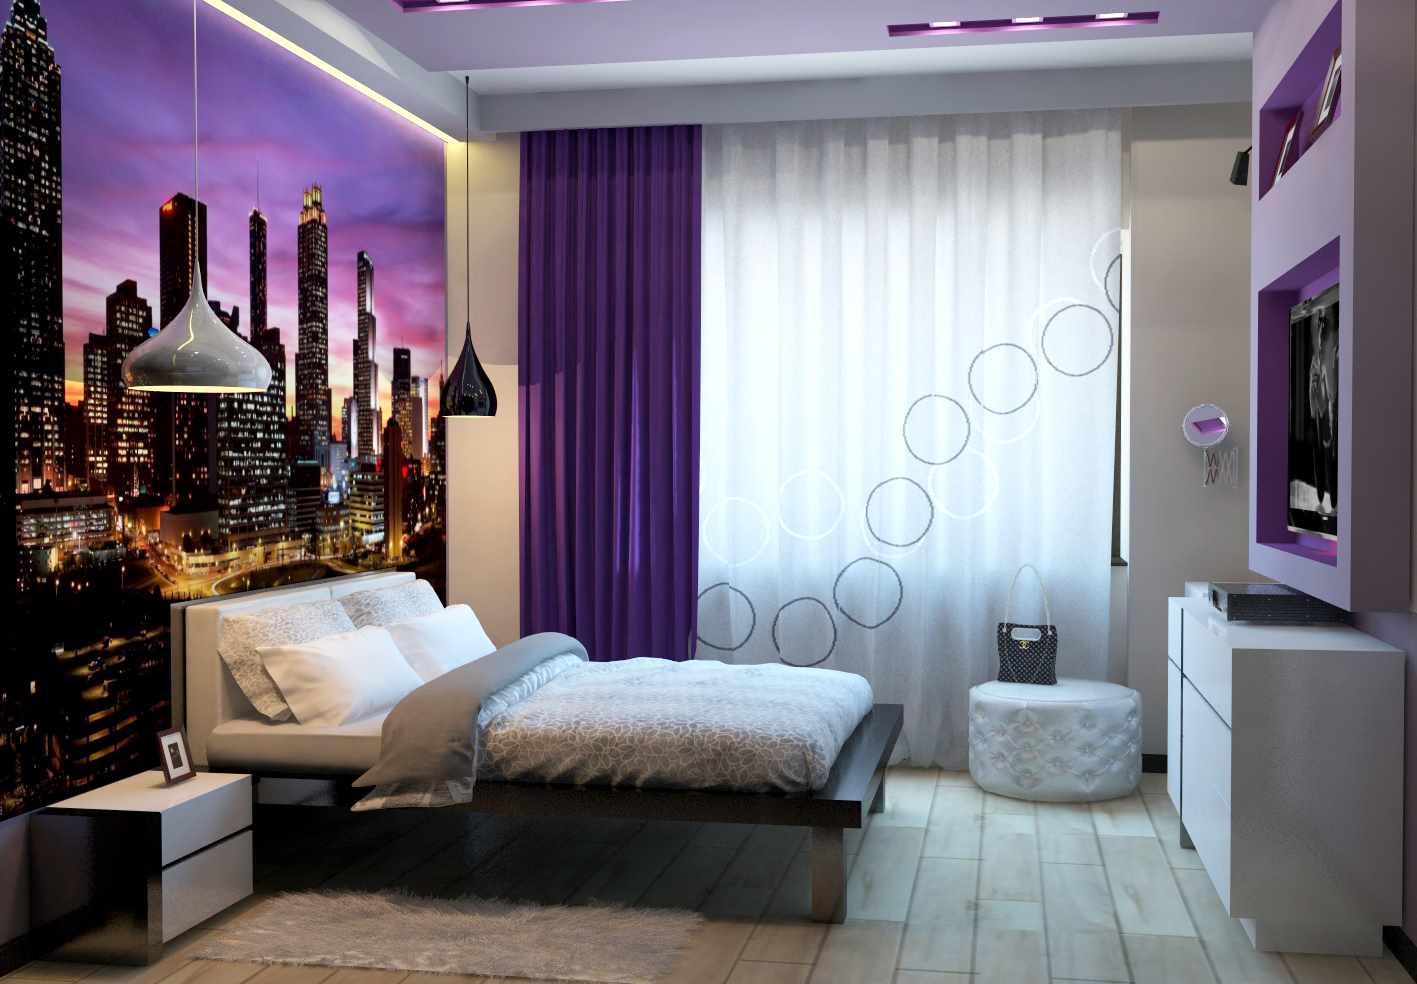 Een voorbeeld van een mooie wanddecoratie voor de slaapkamer